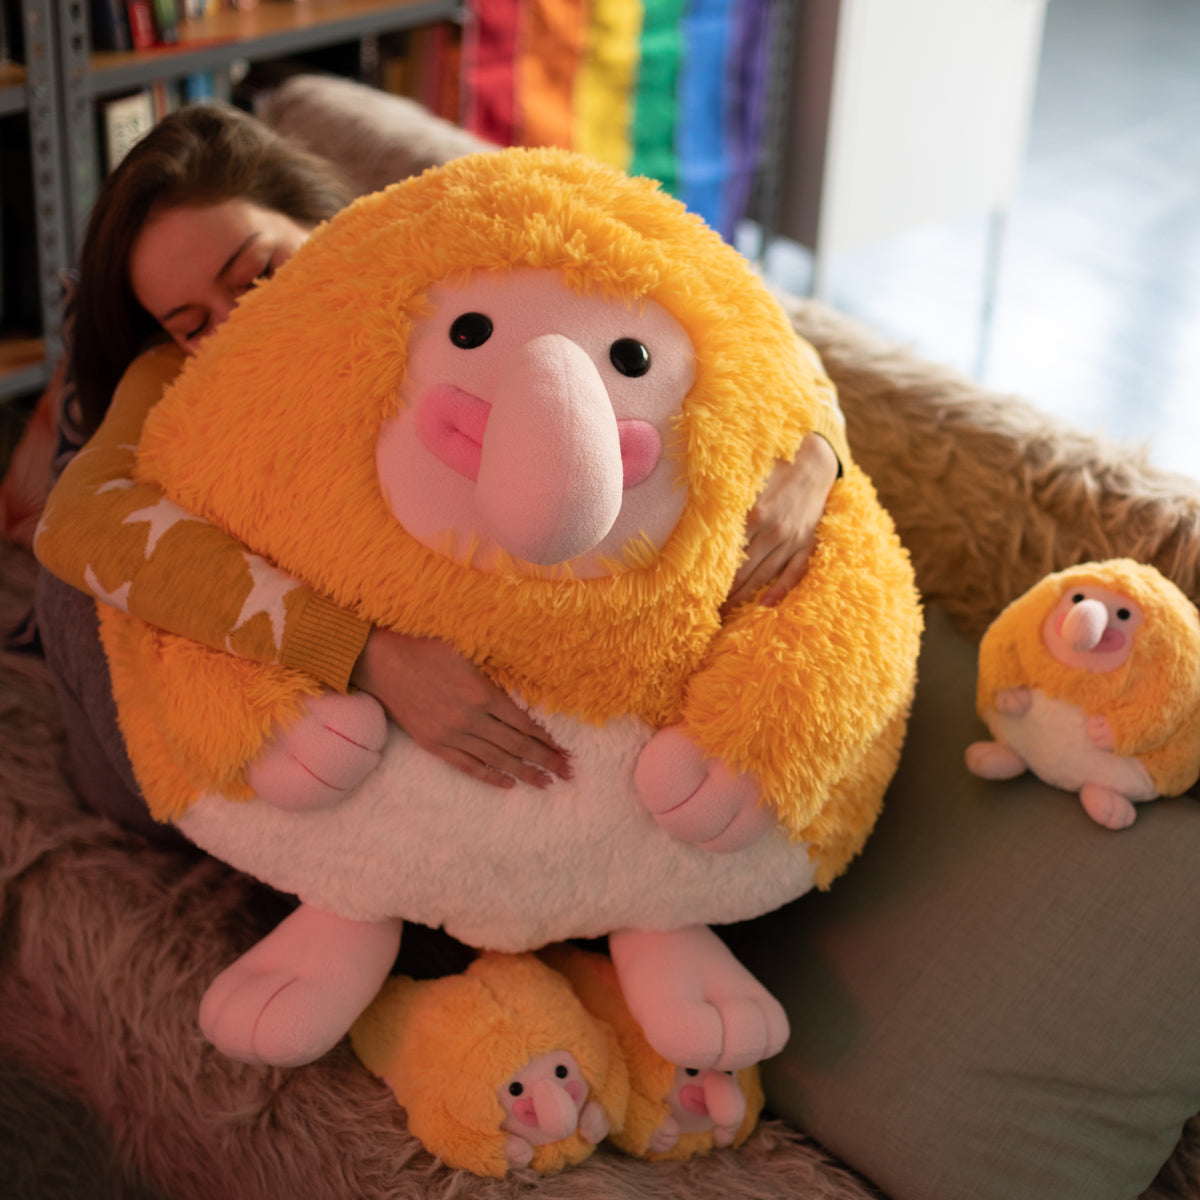 Huge stuffed toy of Proboscis Monkey